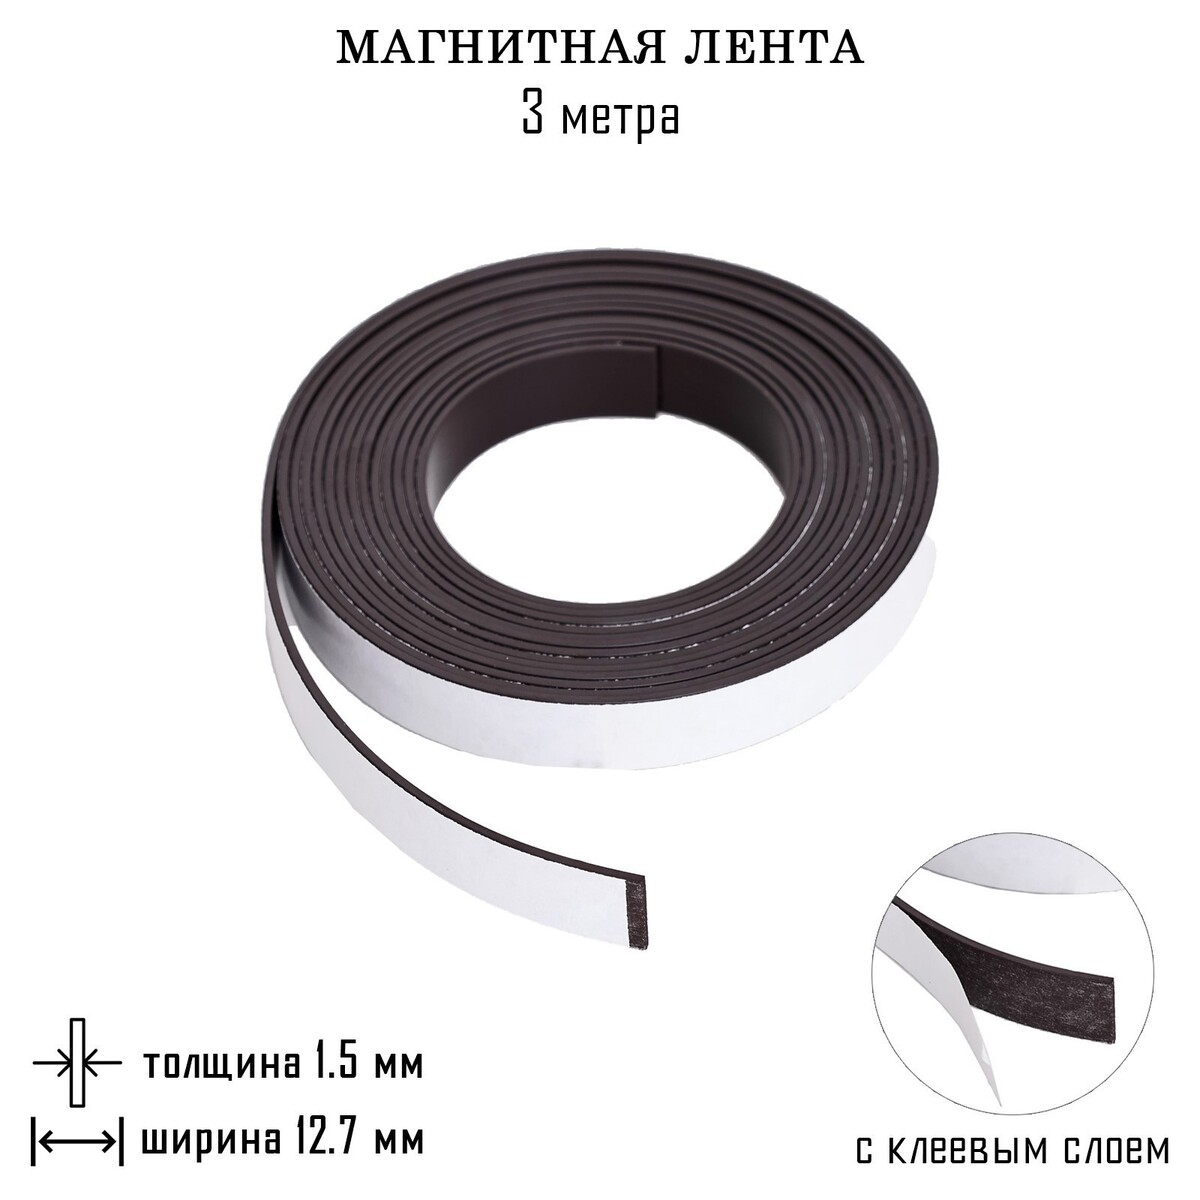 Магнитная лента, с клеевым слоем, 3 метра, толщина 1.5 мм, ширина 12.7 мм магнитная лента с клеевым слоем 10 метров толщина 1 5 мм ширина 12 7 см